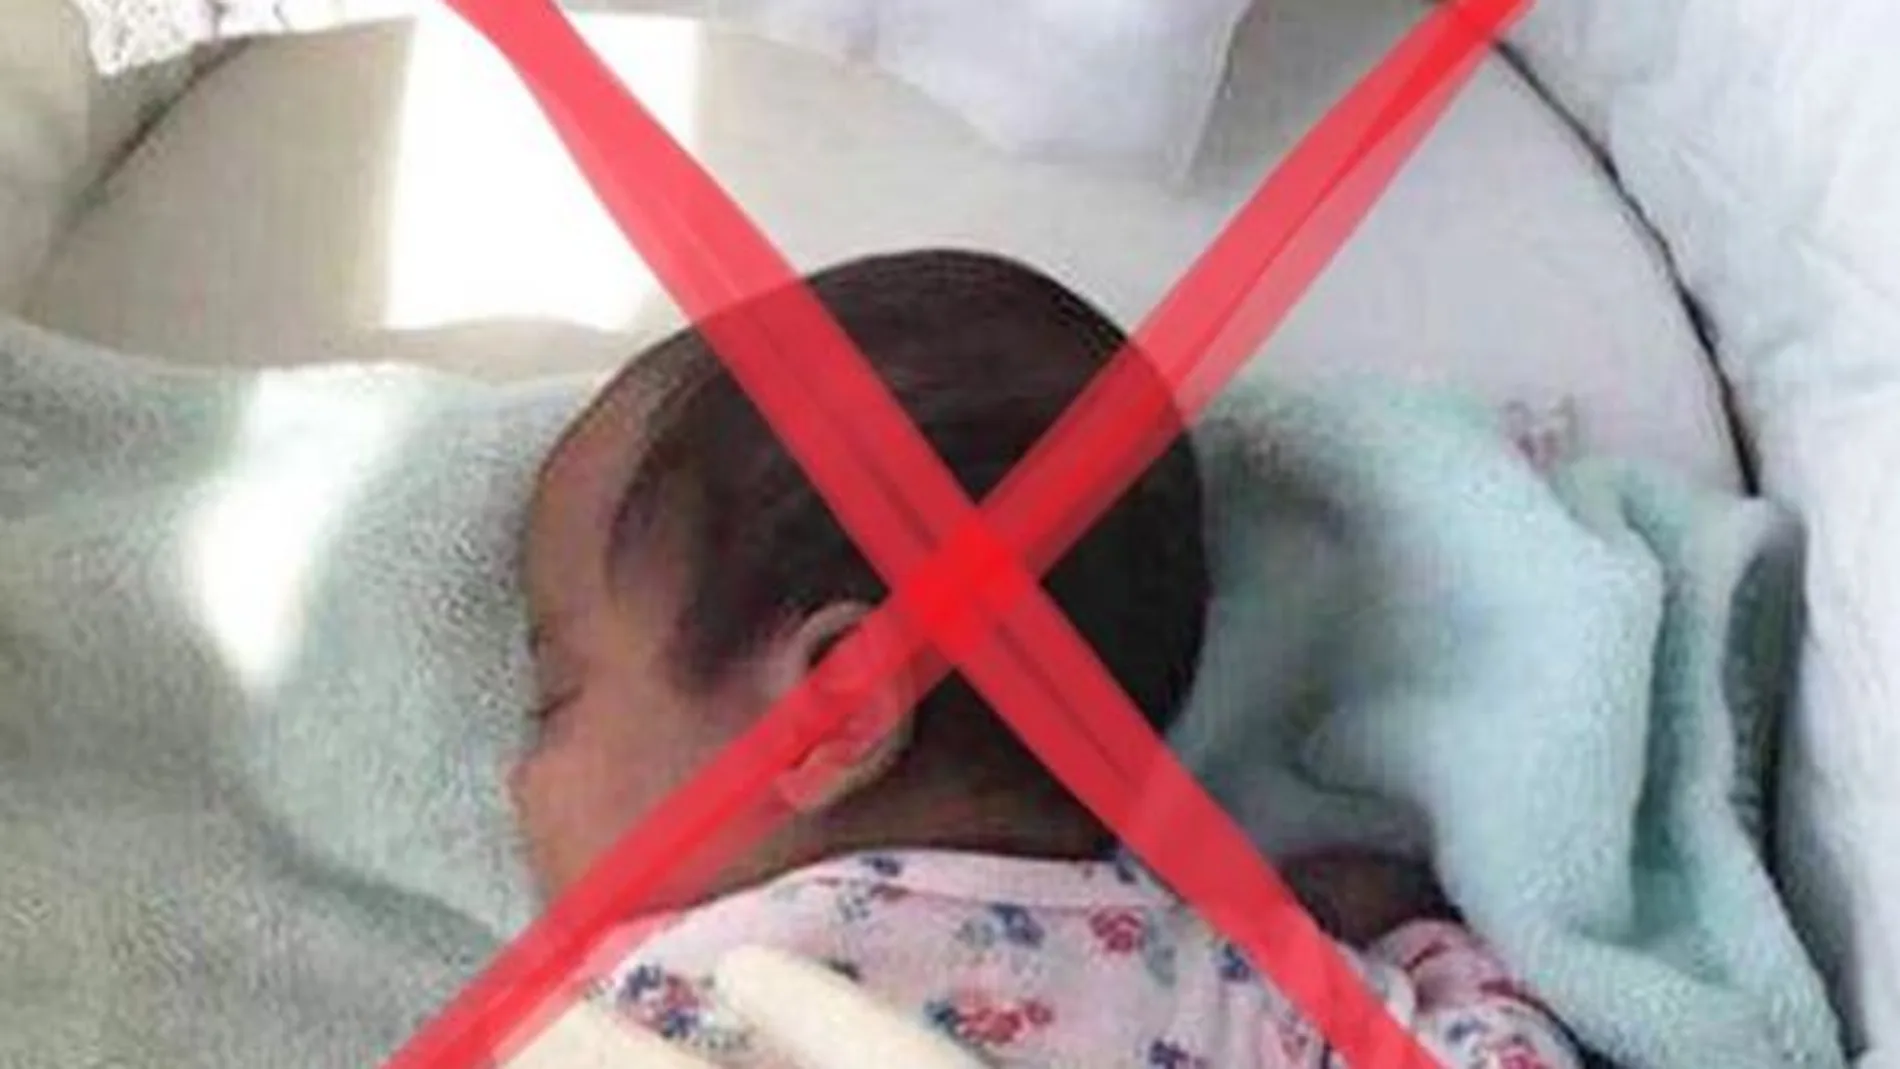 Lucía mi Pediatra advierte de lo que "no debes hacer jamás"con un recién nacido